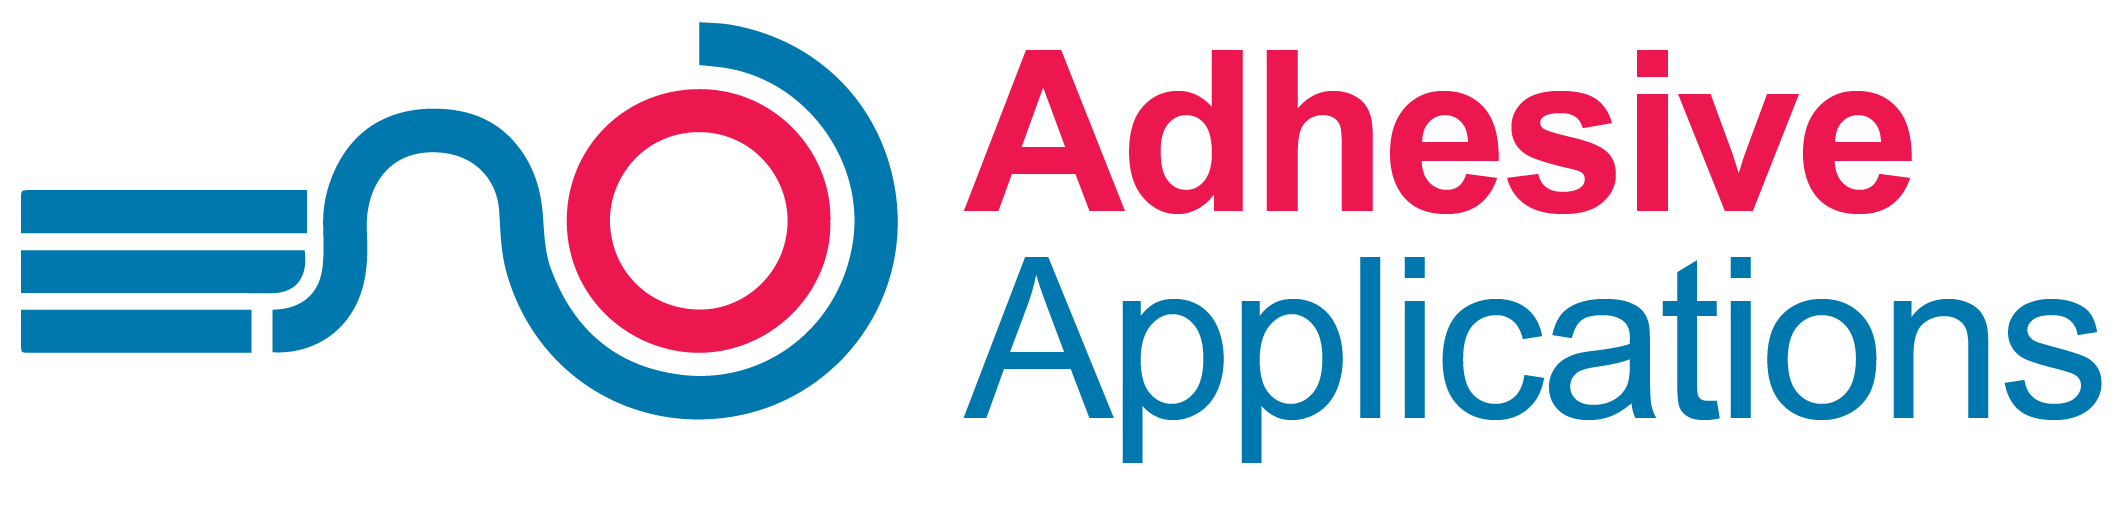 AA Logo - High Res Transparent PNGpng